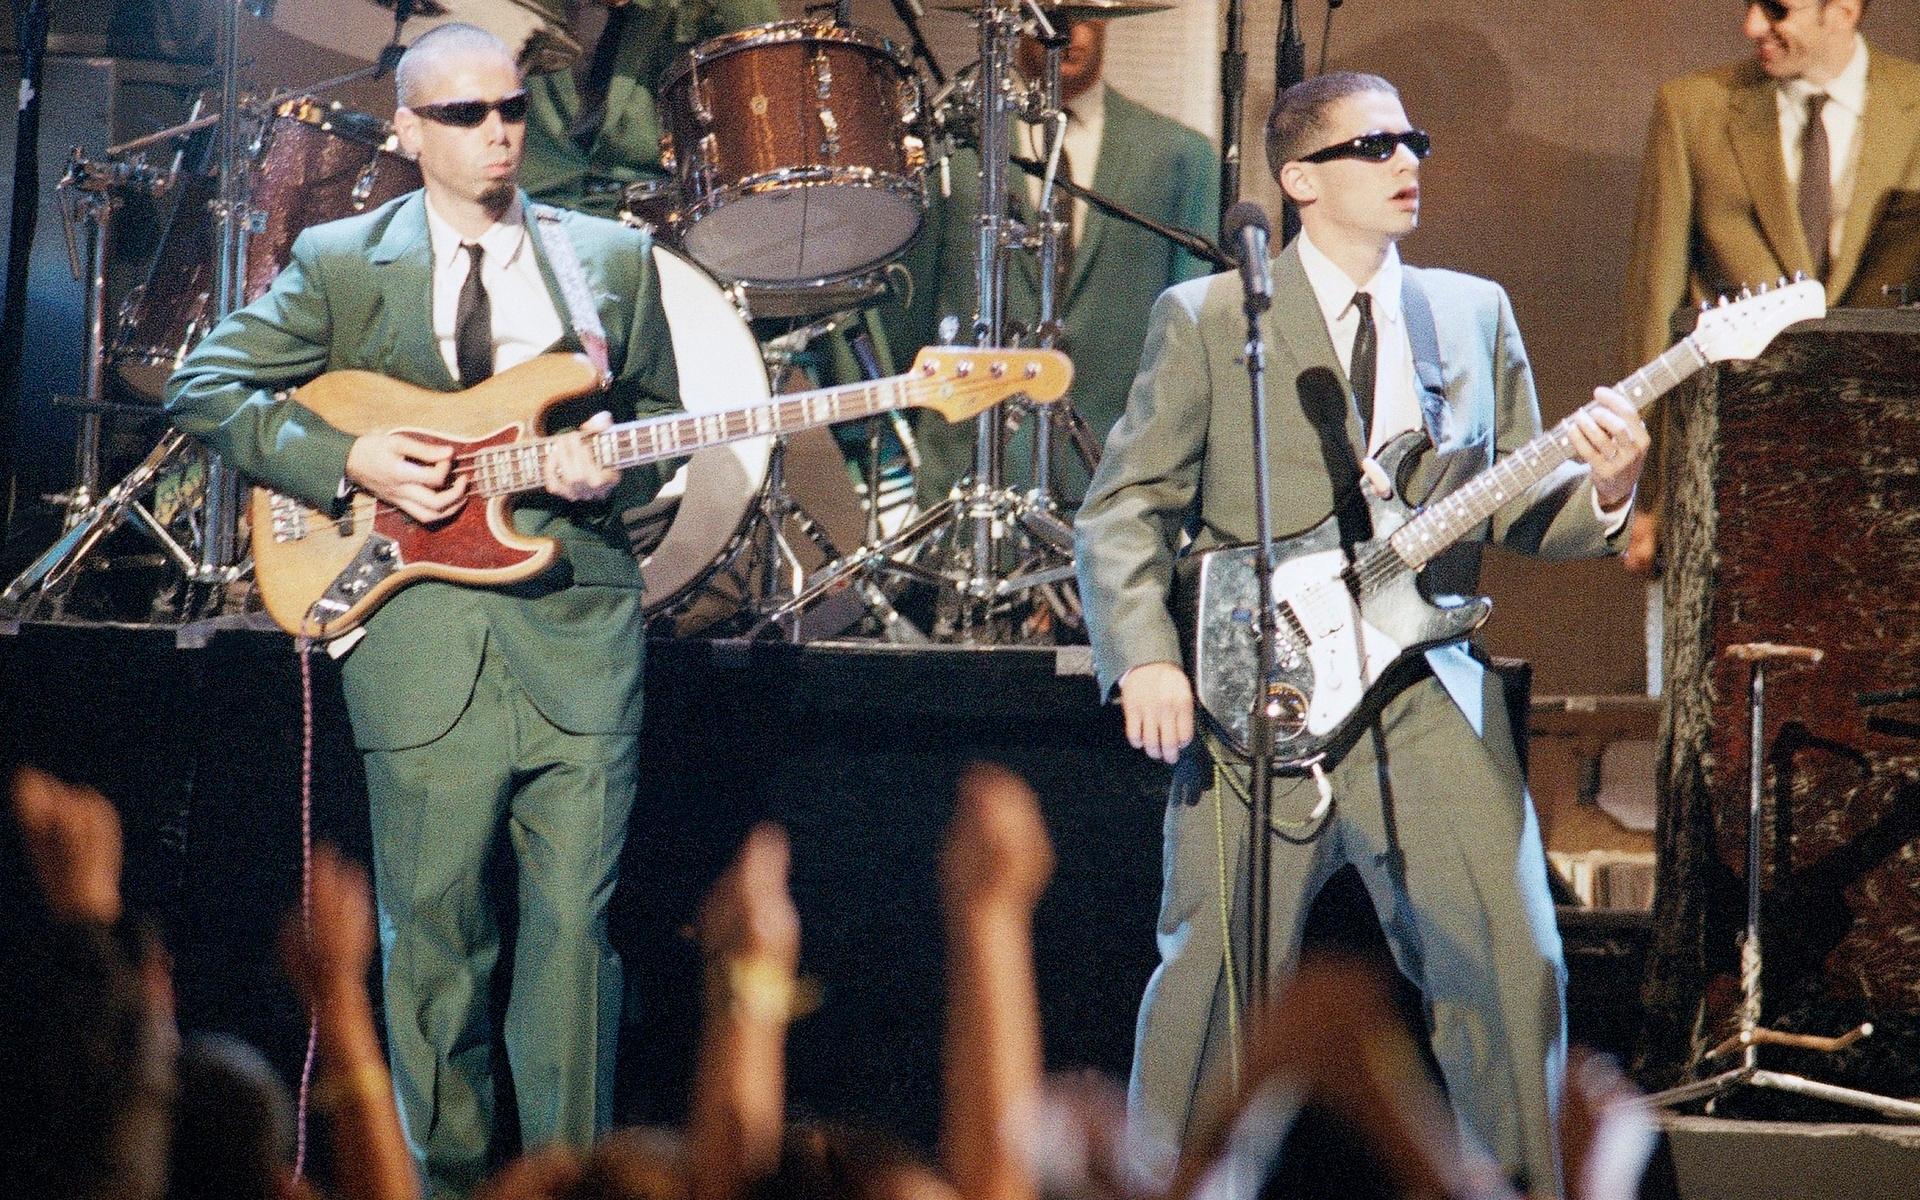 Beastie Boys polisfilms-musikvideo till ”Sabotage” fick stor spridning på kanalen.